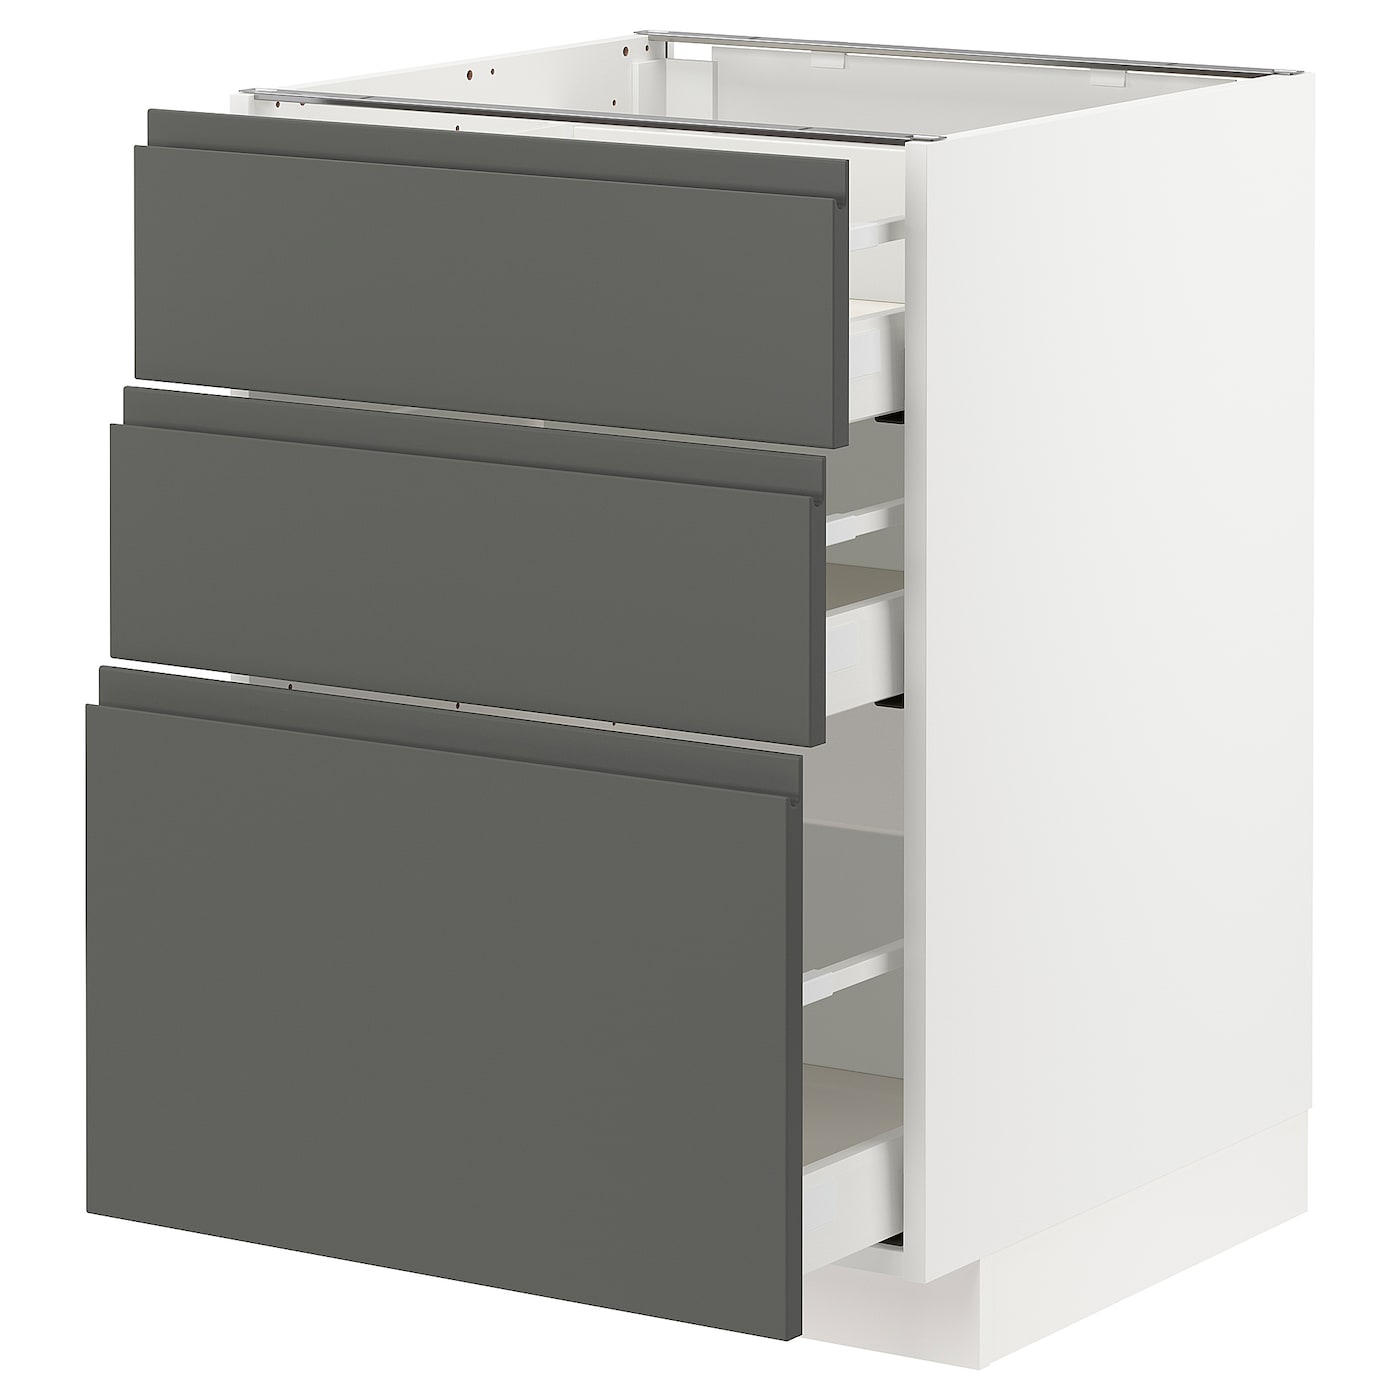 Напольный шкаф - METOD / MAXIMERA IKEA/ МЕТОД/ МАКСИМЕРА ИКЕА,  88х60 см, белый/серый